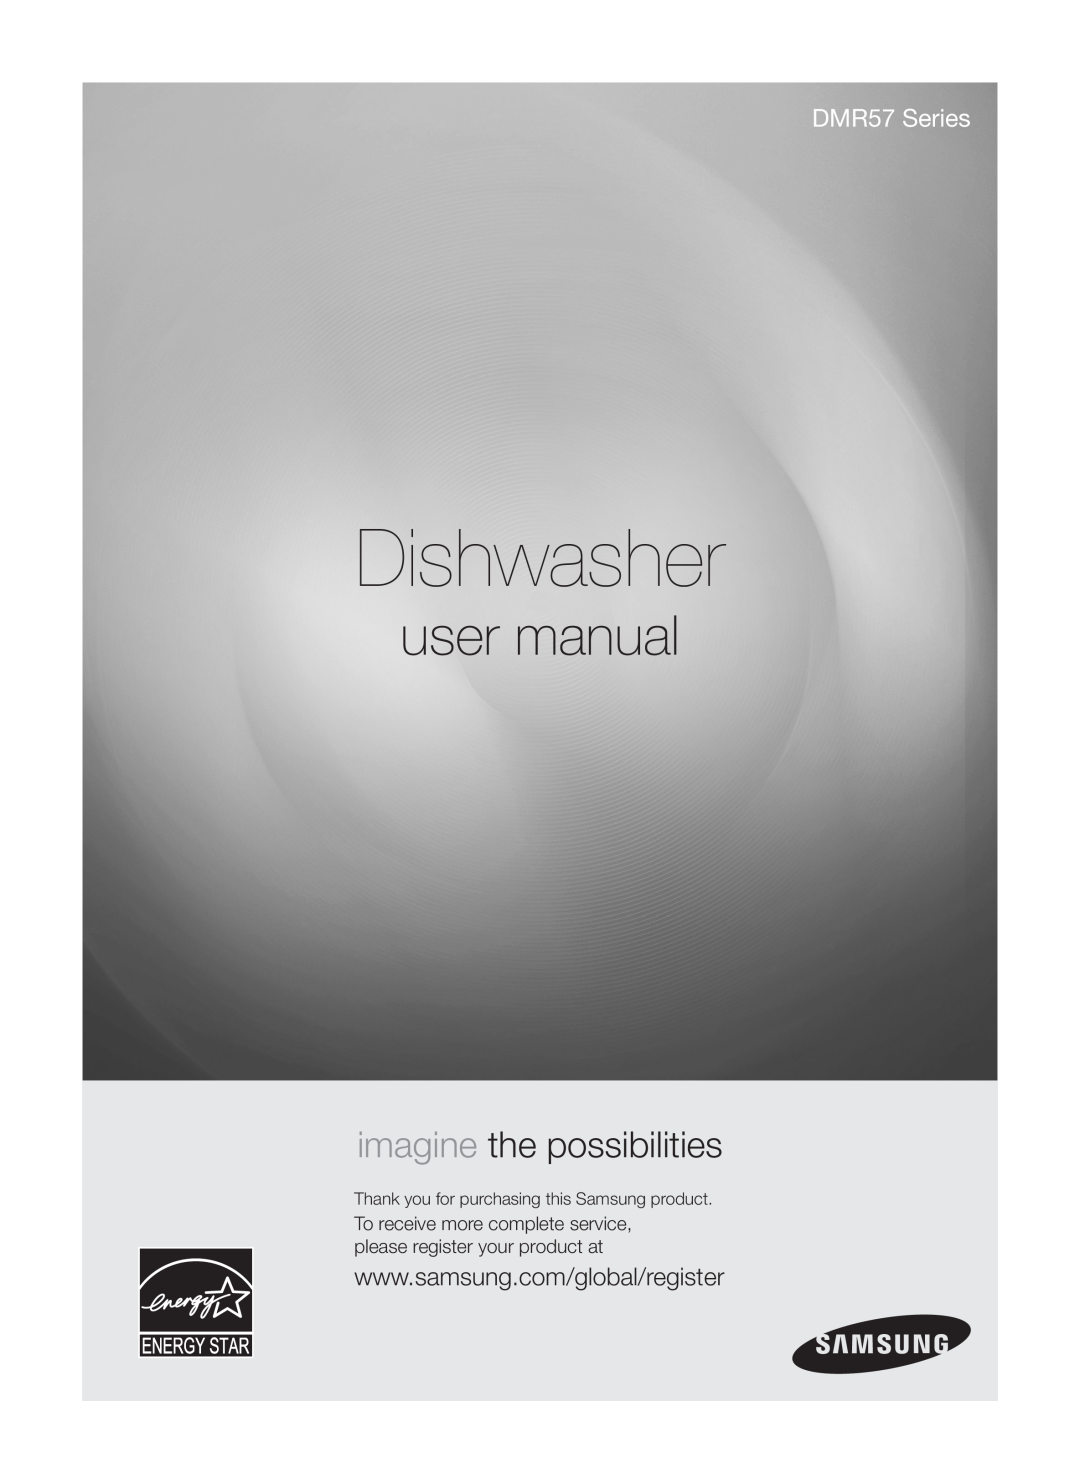 Samsung DMR57LHW, DMR57LHS, DMR57LHB user manual Dishwasher, imagine the possibilities, DMR57 Series 